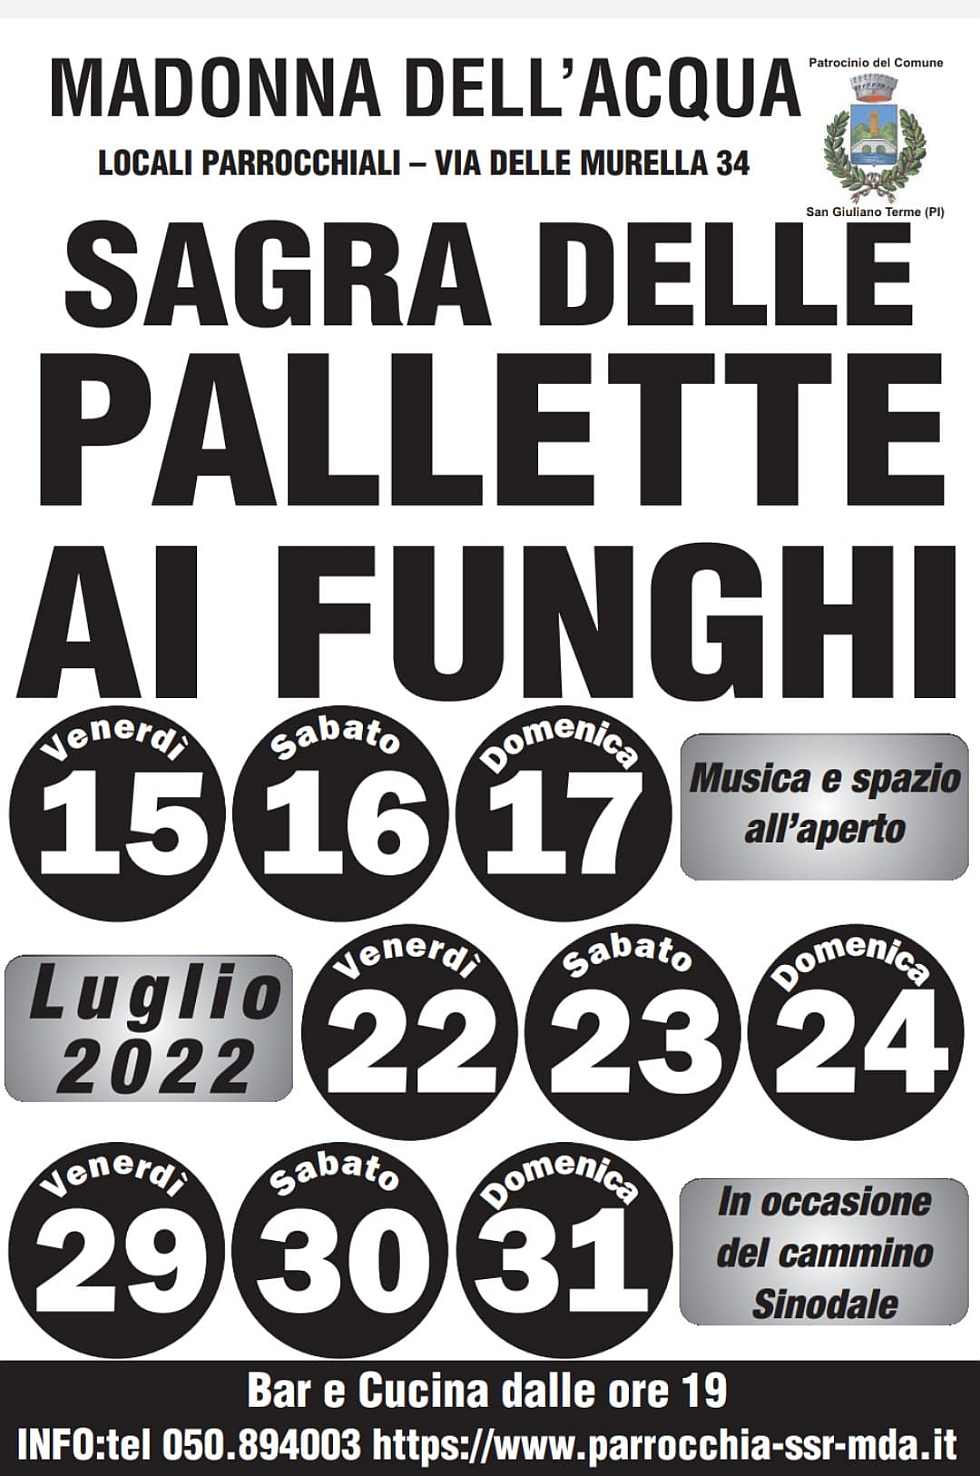 San Giuliano Terme (PI)
"Sagra delle Pallette con i Funghi"
tutti i VEN-SAB-DOM
dal 15 al 31 Luglio 2022